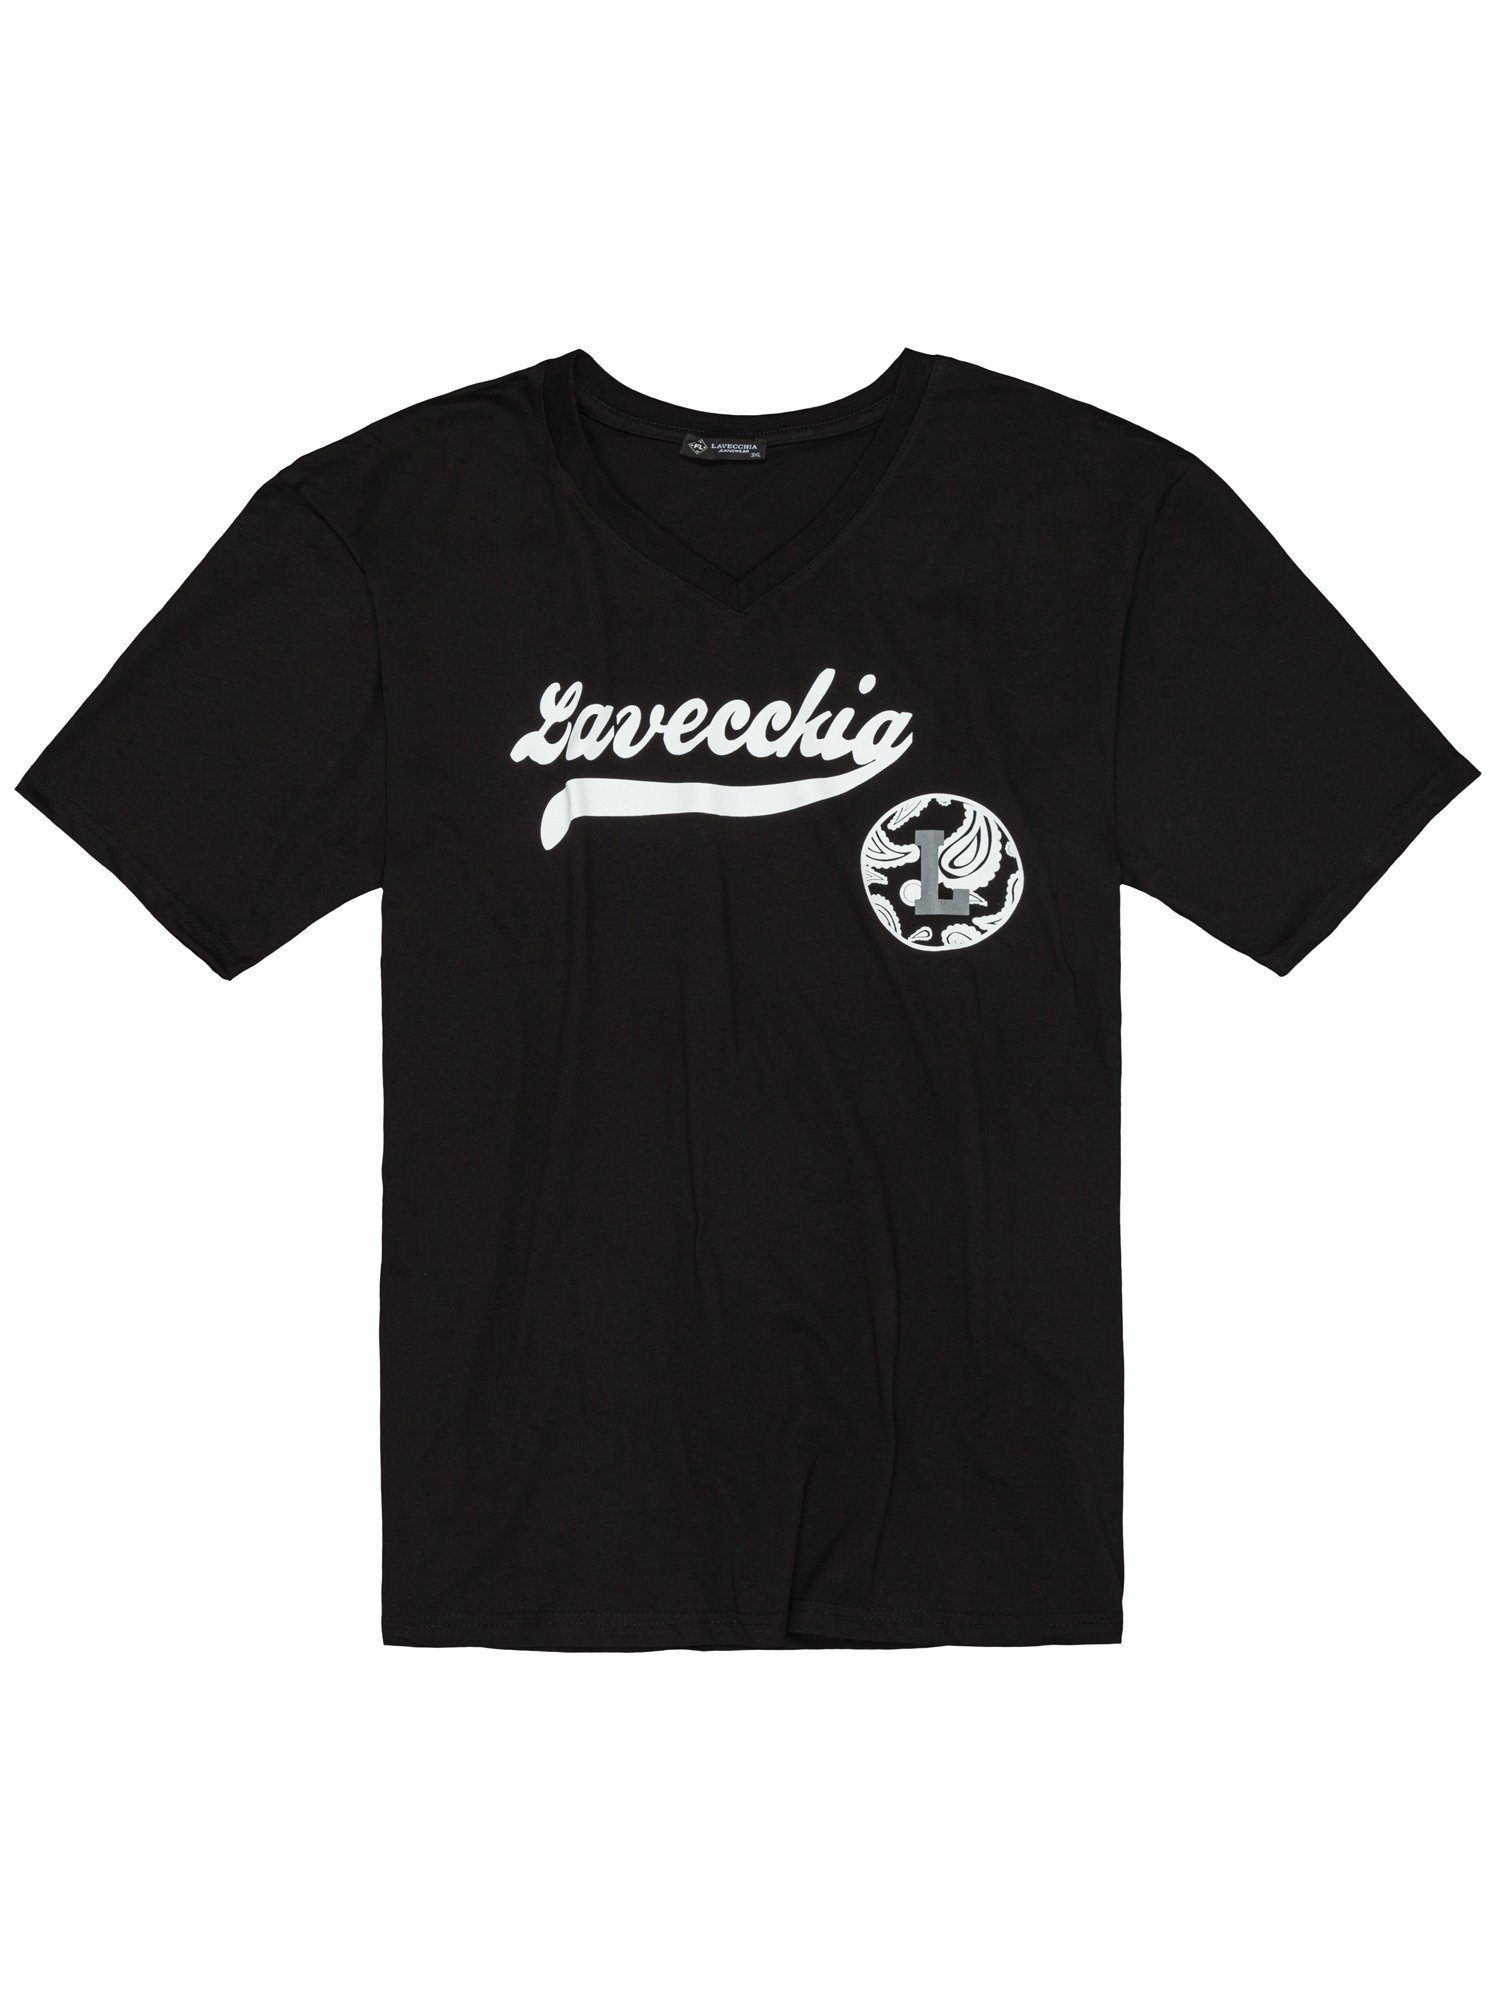 Lavecchia T-Shirt Übergrößen Herrenshirt LV-9900 V-Ausschnitt V-Shirt Herren